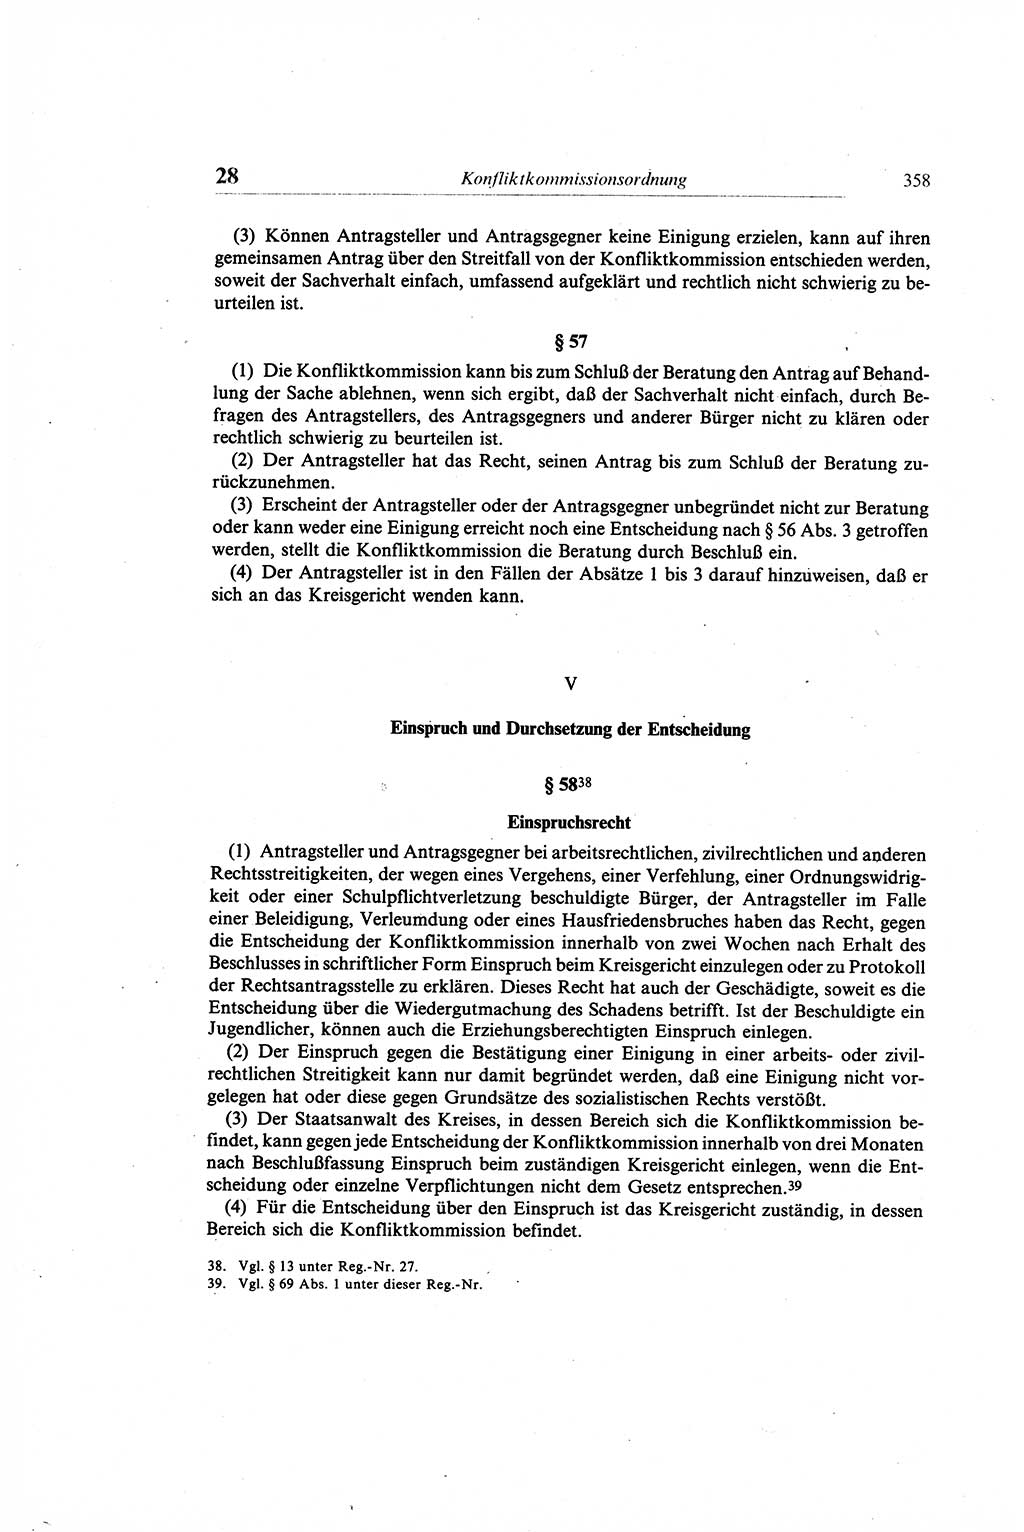 Gesetzbuch der Arbeit (GBA) und andere ausgewählte rechtliche Bestimmungen [Deutsche Demokratische Republik (DDR)] 1968, Seite 358 (GBA DDR 1968, S. 358)